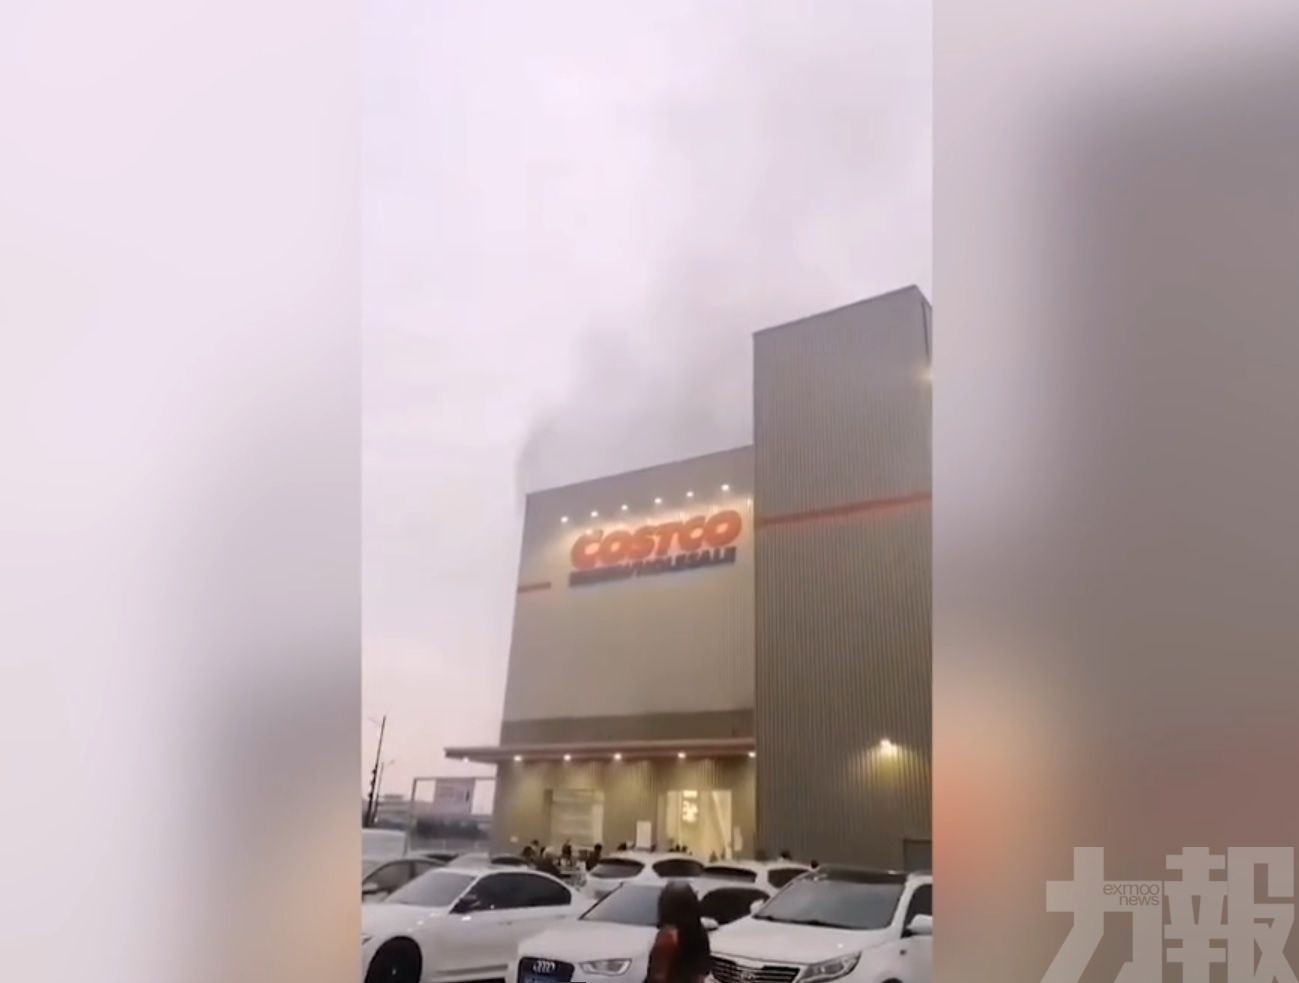 上海Costco發生火警 無人傷亡